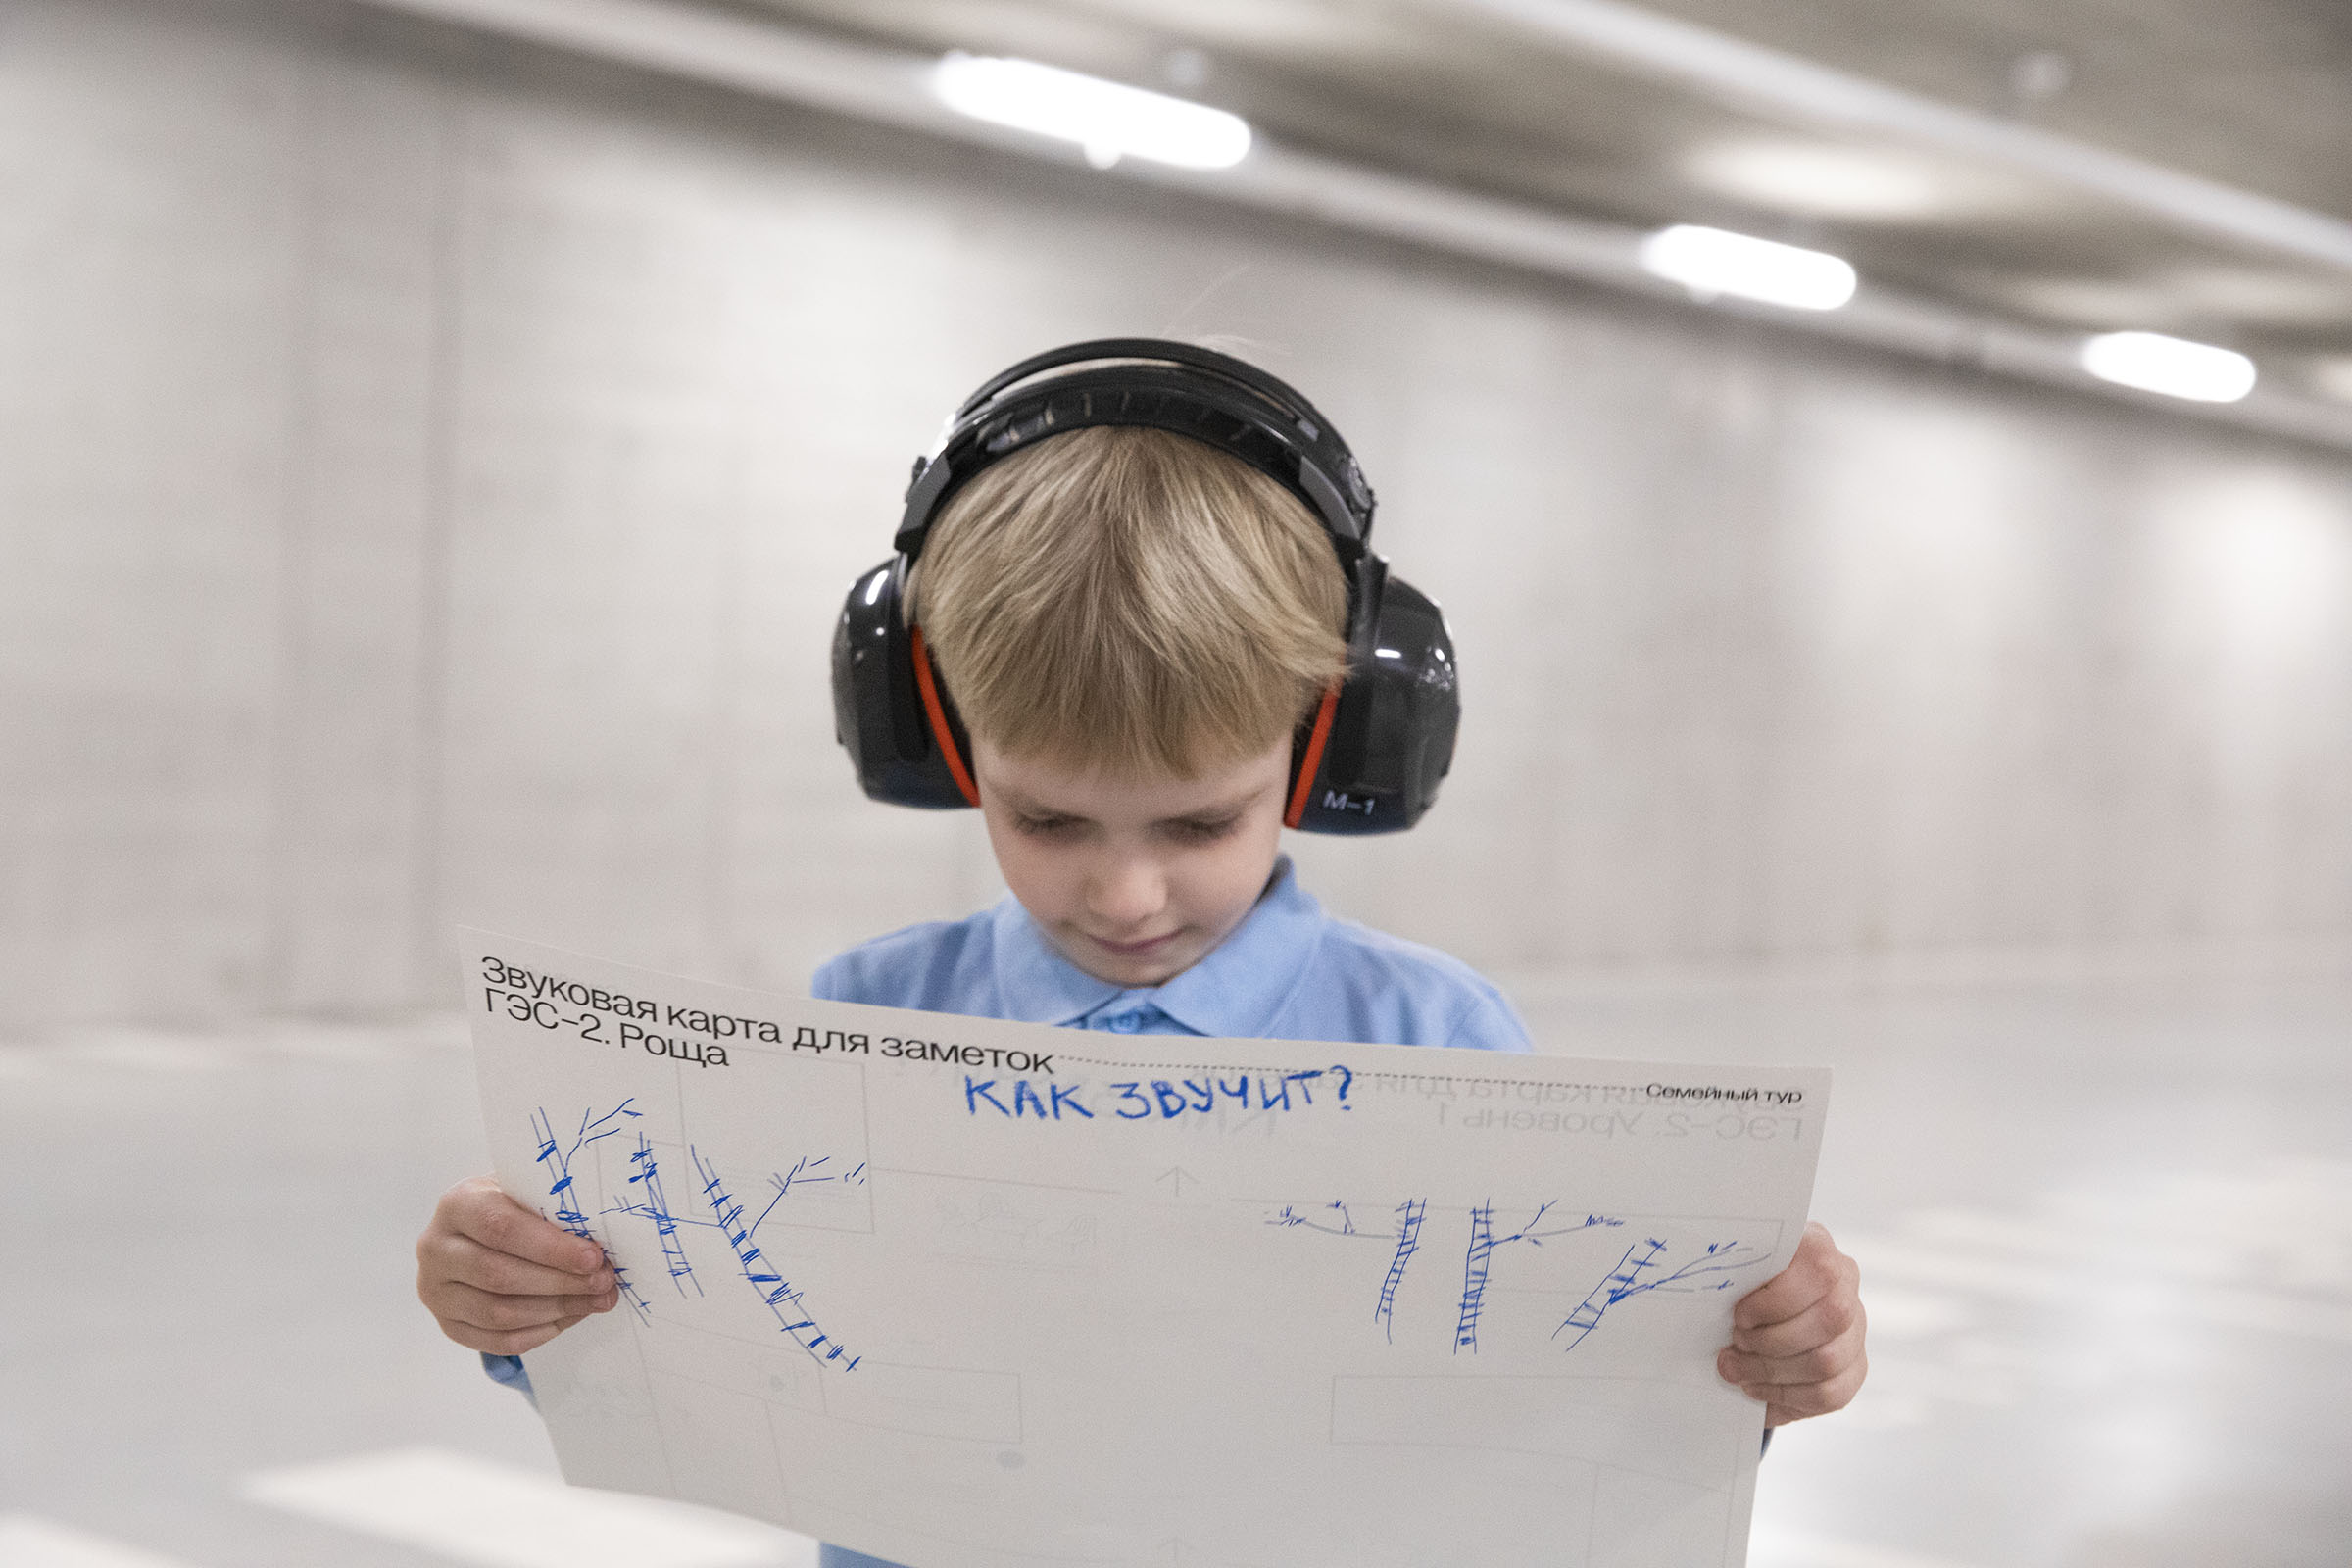 Фото: мальчик в наушниках держит в руках и изучает «Звуковую карту для заметок» – большой белый лист с печатным текстом и рисунками от руки 